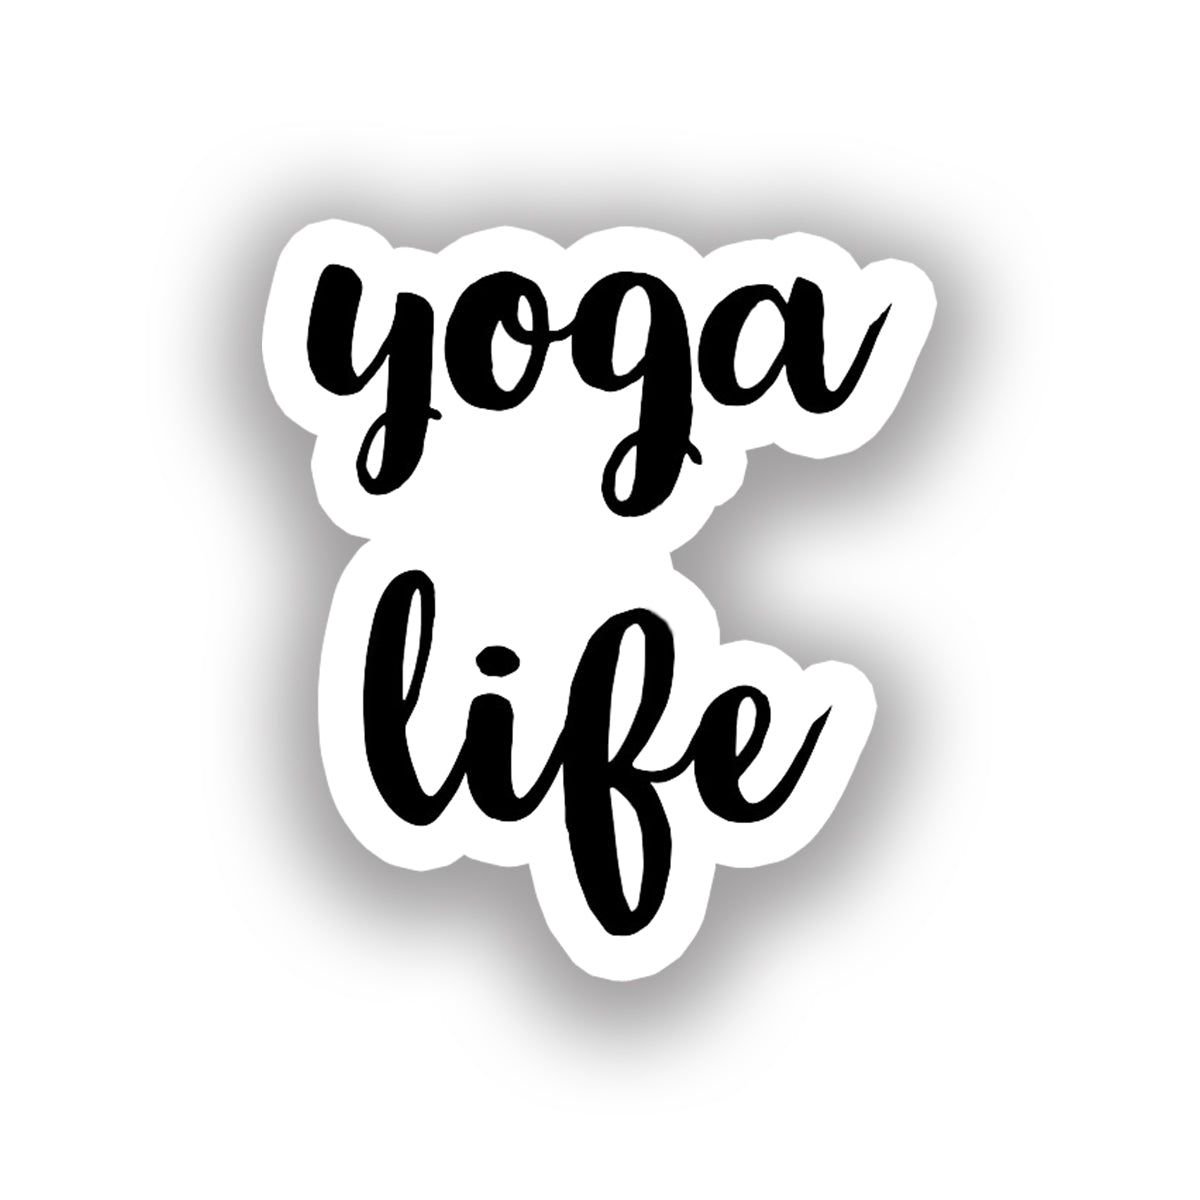 Yoga 4 - Yoga Life